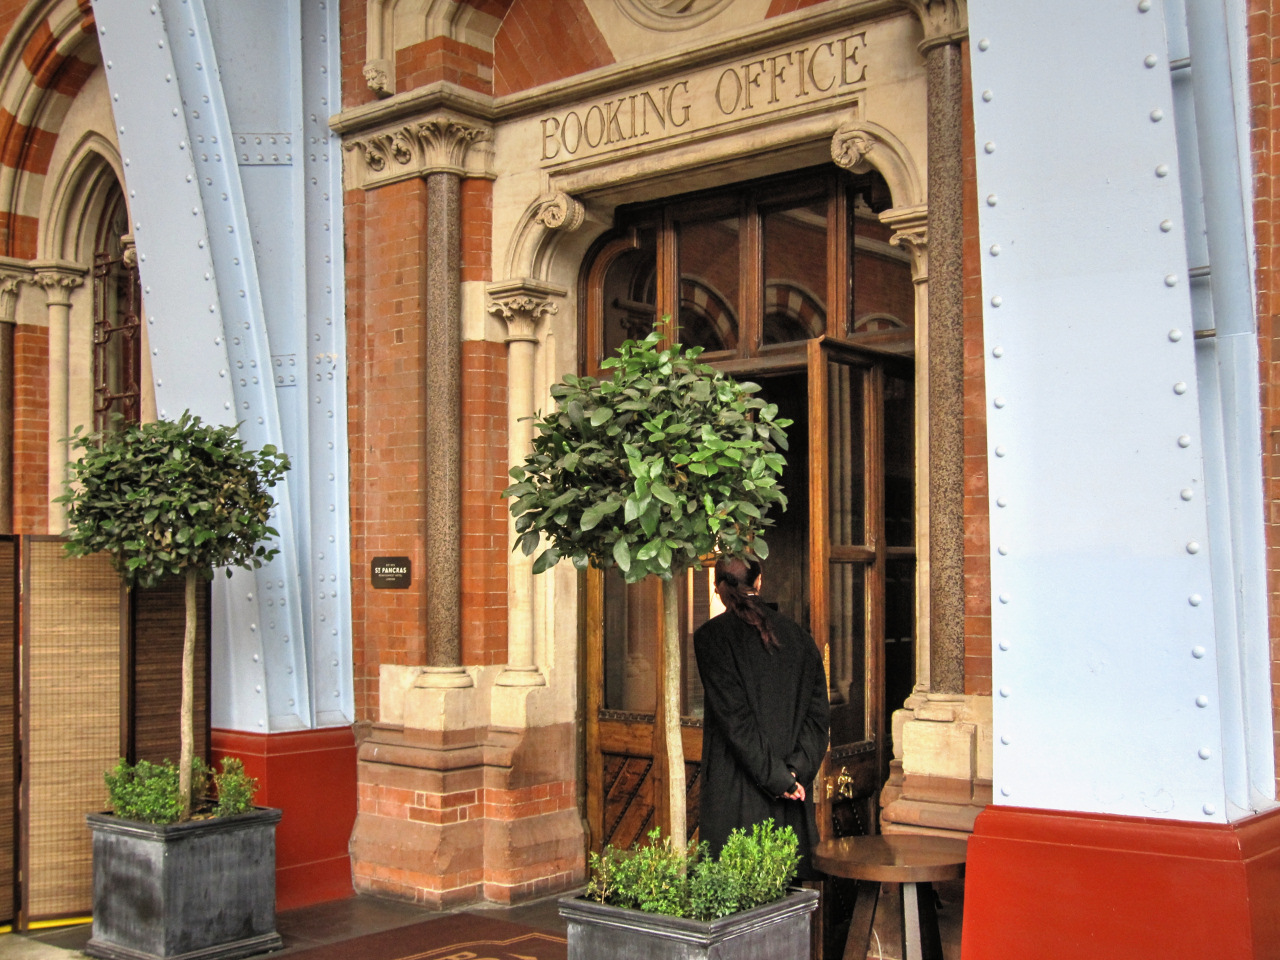 Booking Office doorway